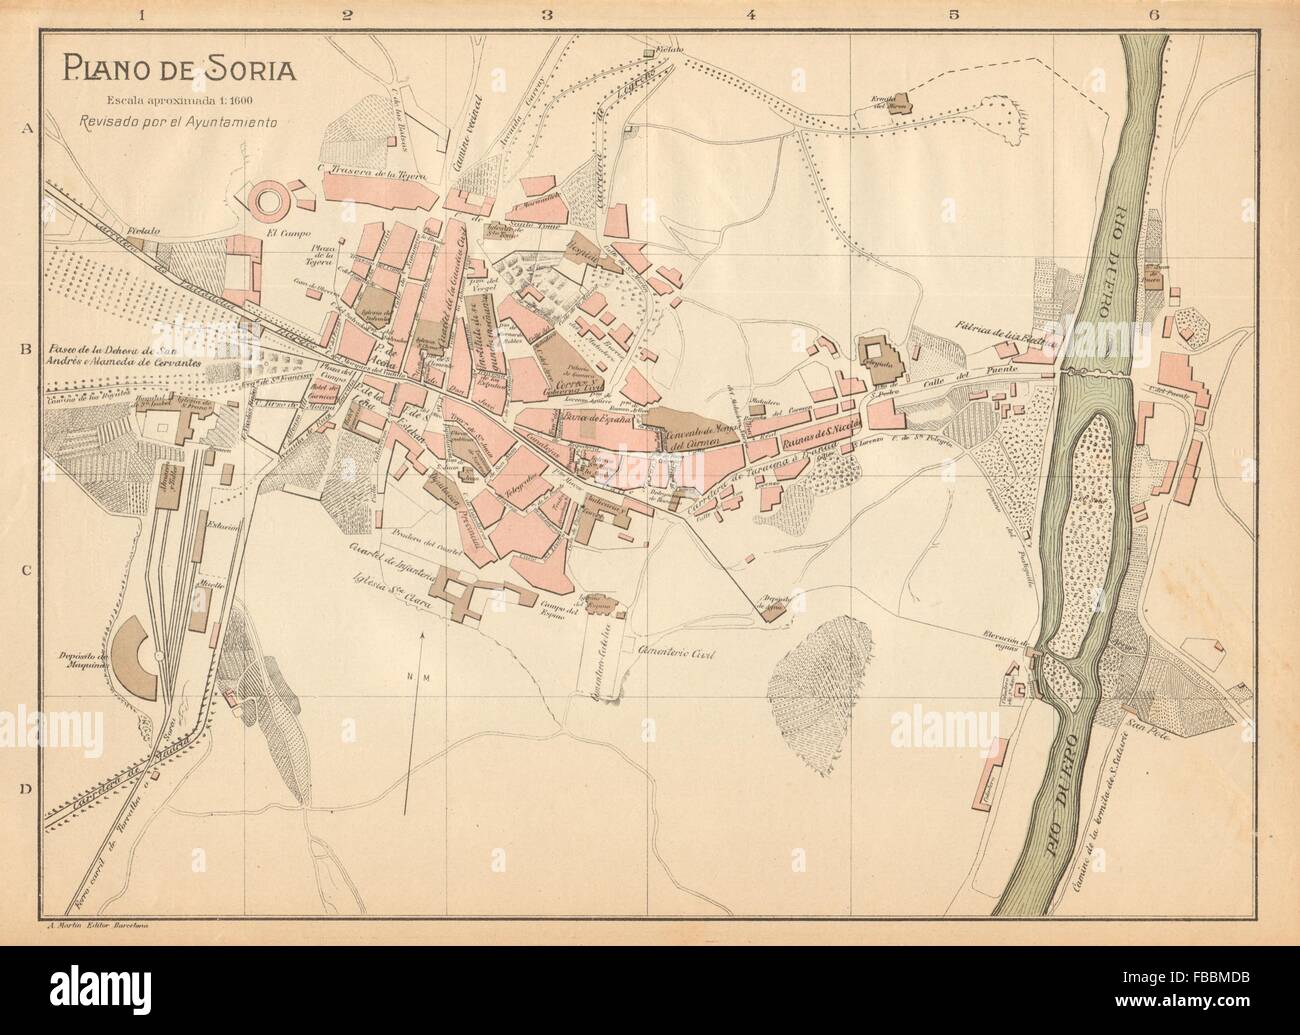 SORIA. Plano antiguo de la cuidad. Antique town/city plan. MARTIN, c1911 map Stock Photo